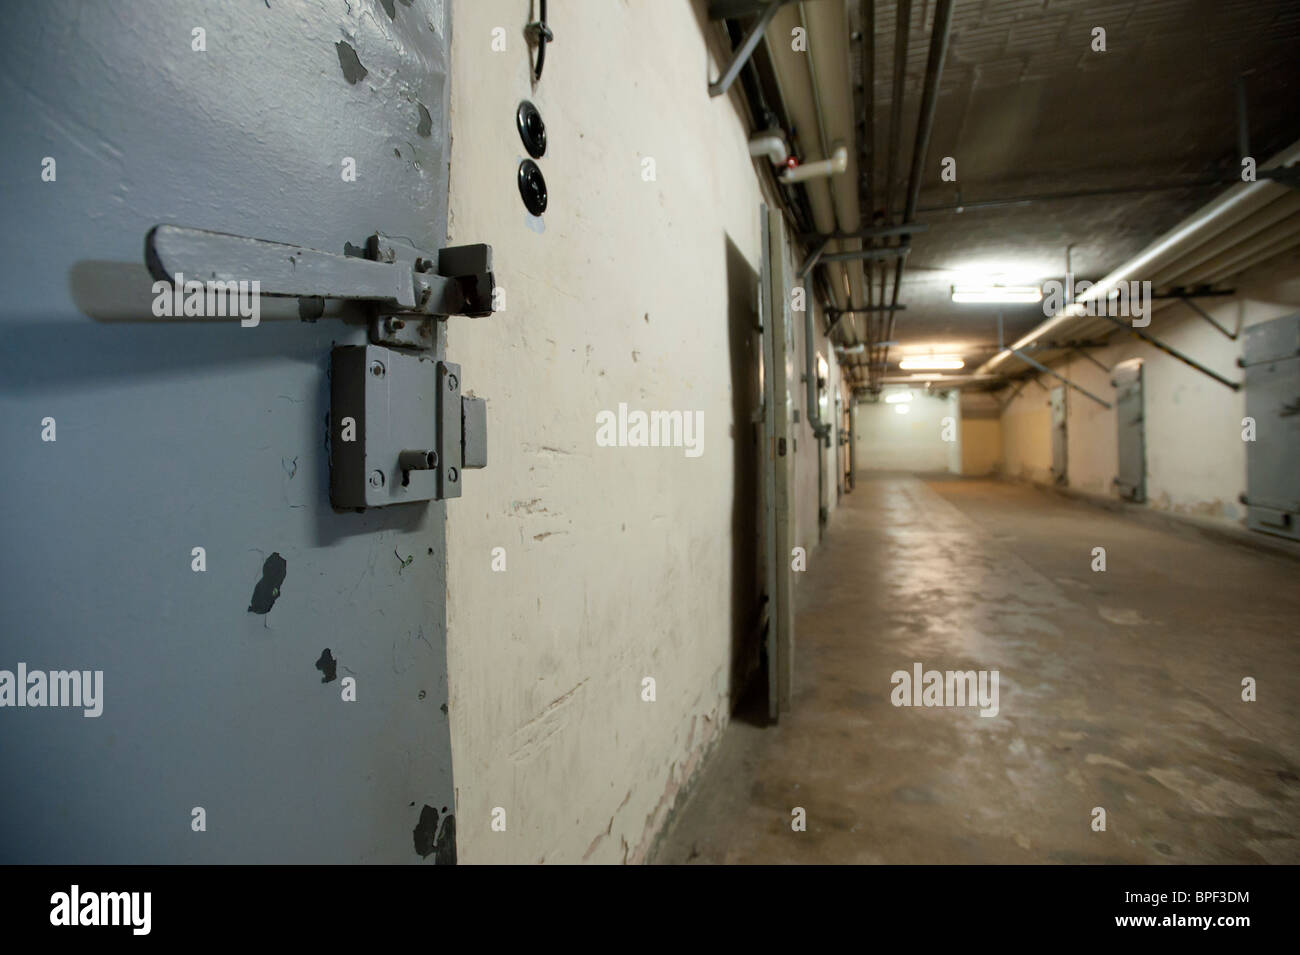 Dans des cellules souterraines U-boat à bunker secret d'État ou de la police de sécurité à la prison de la STASI à Berlin Hohenschönhausen Allemagne Banque D'Images